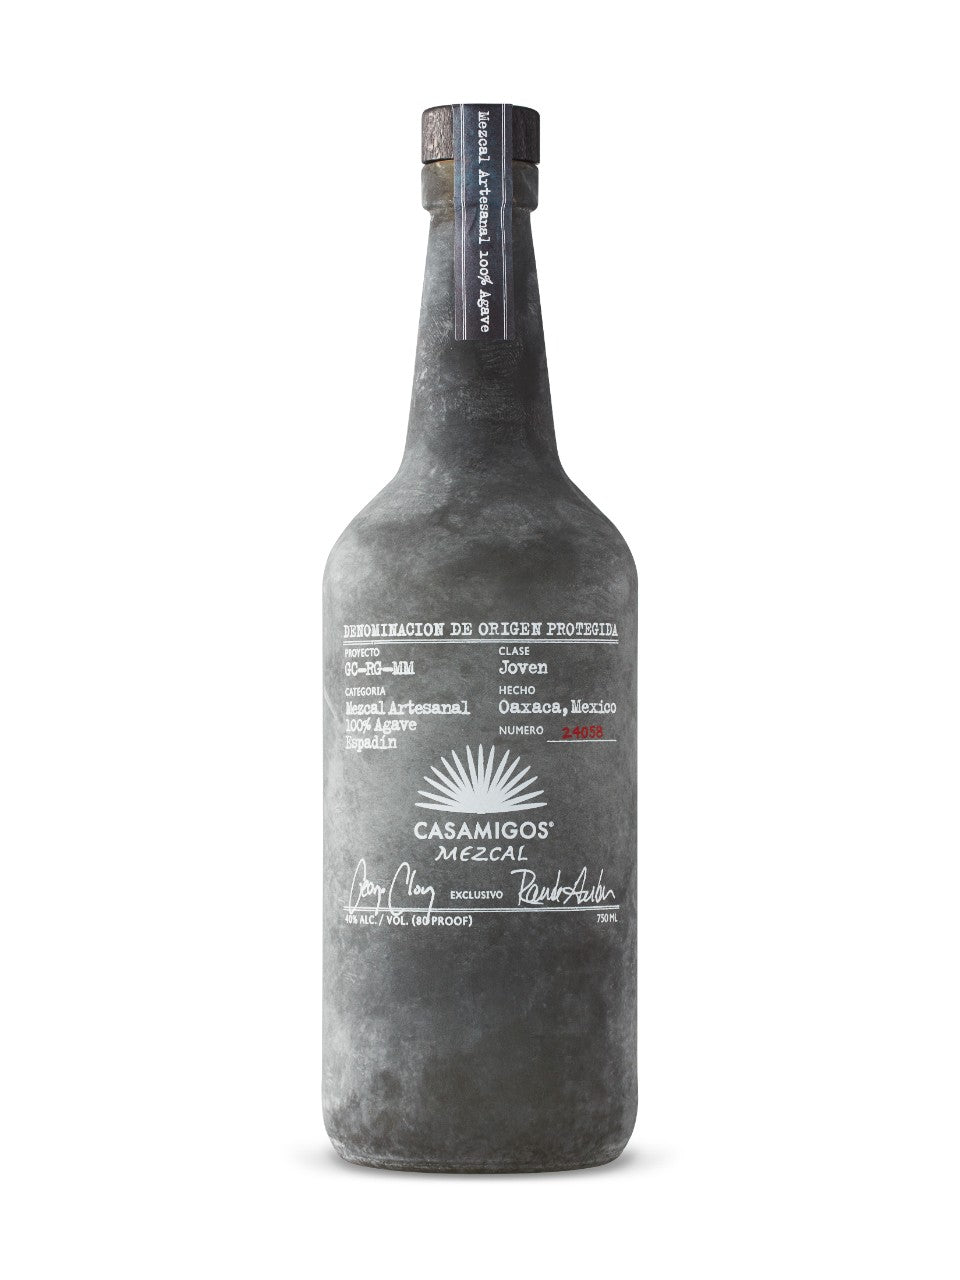 Casamigos Mezcal 750 mL bottle